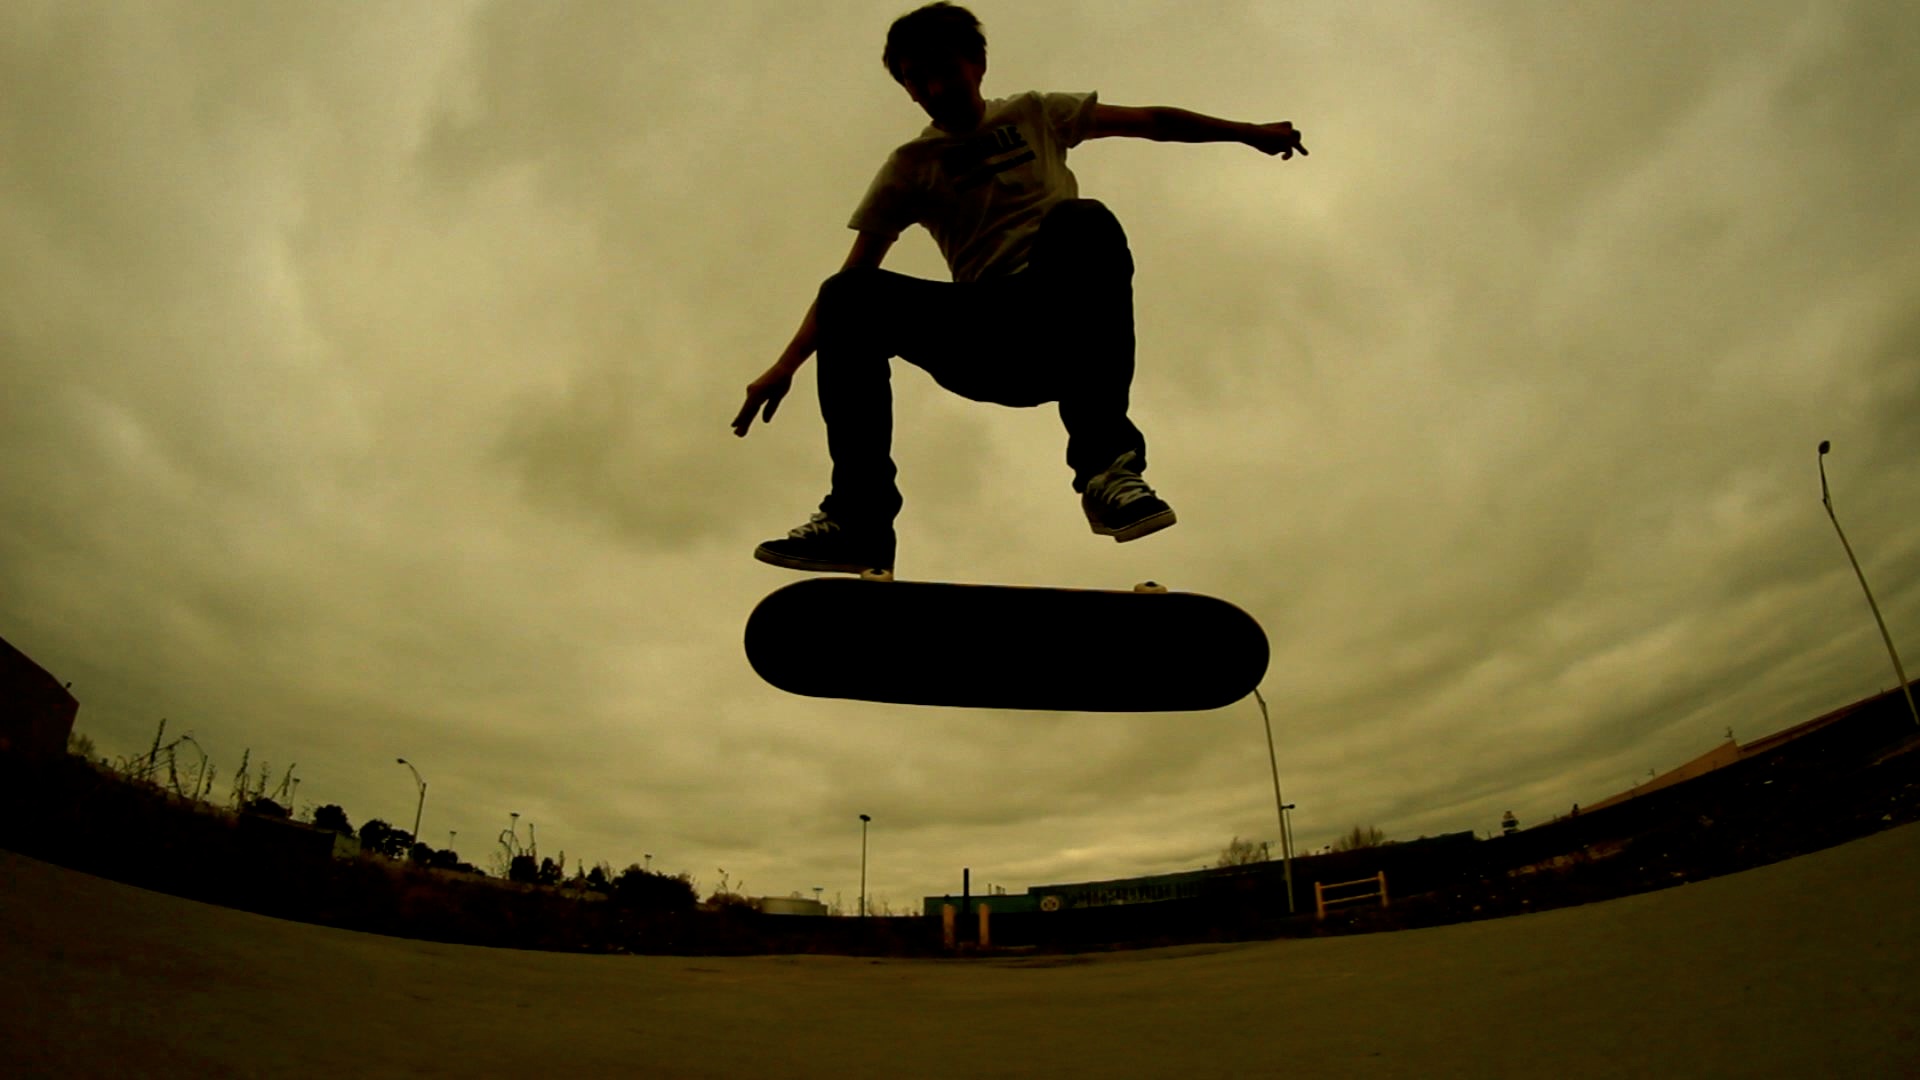 Skateboarding #5